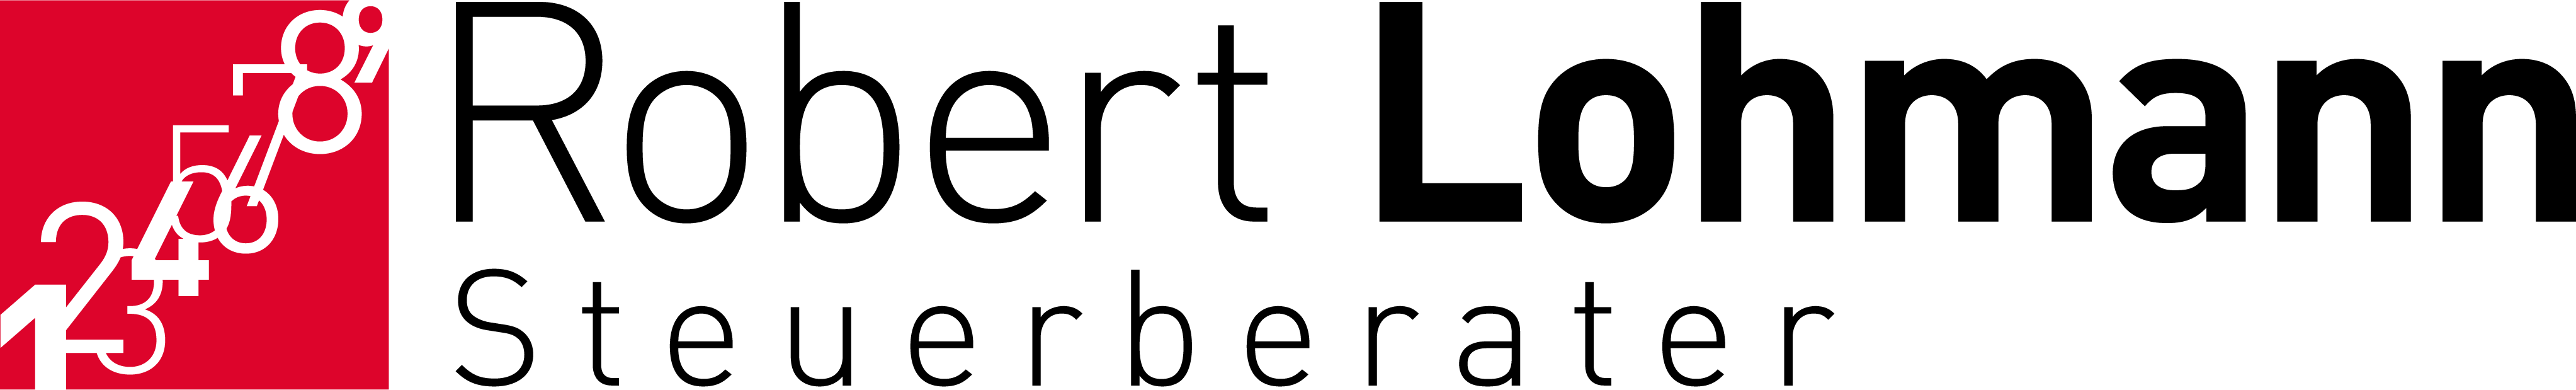 Steuerberater Robert Lohmann Logo